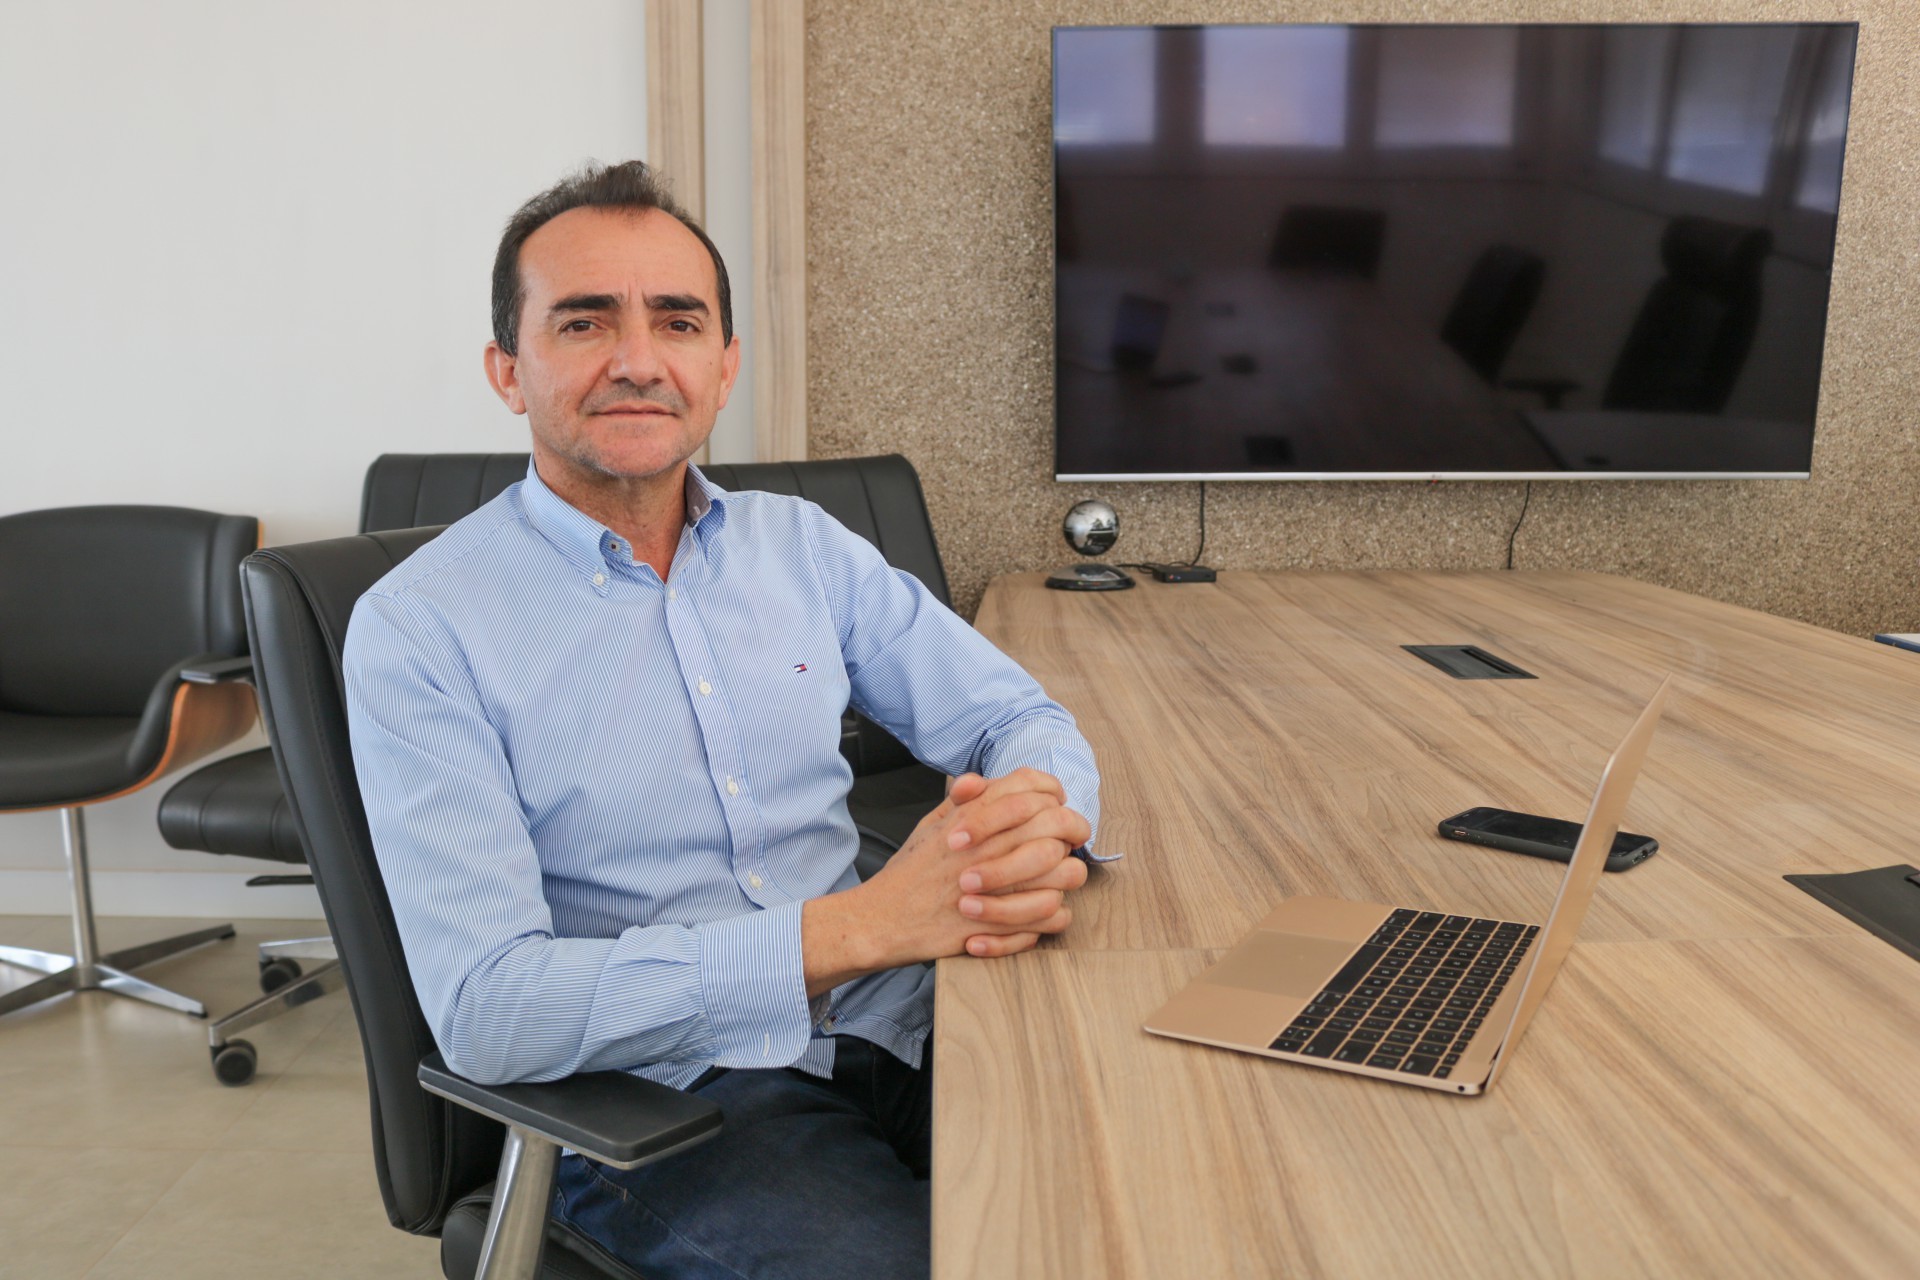  CEO da Brisanet Telecomunicações, Roberto Nogueira